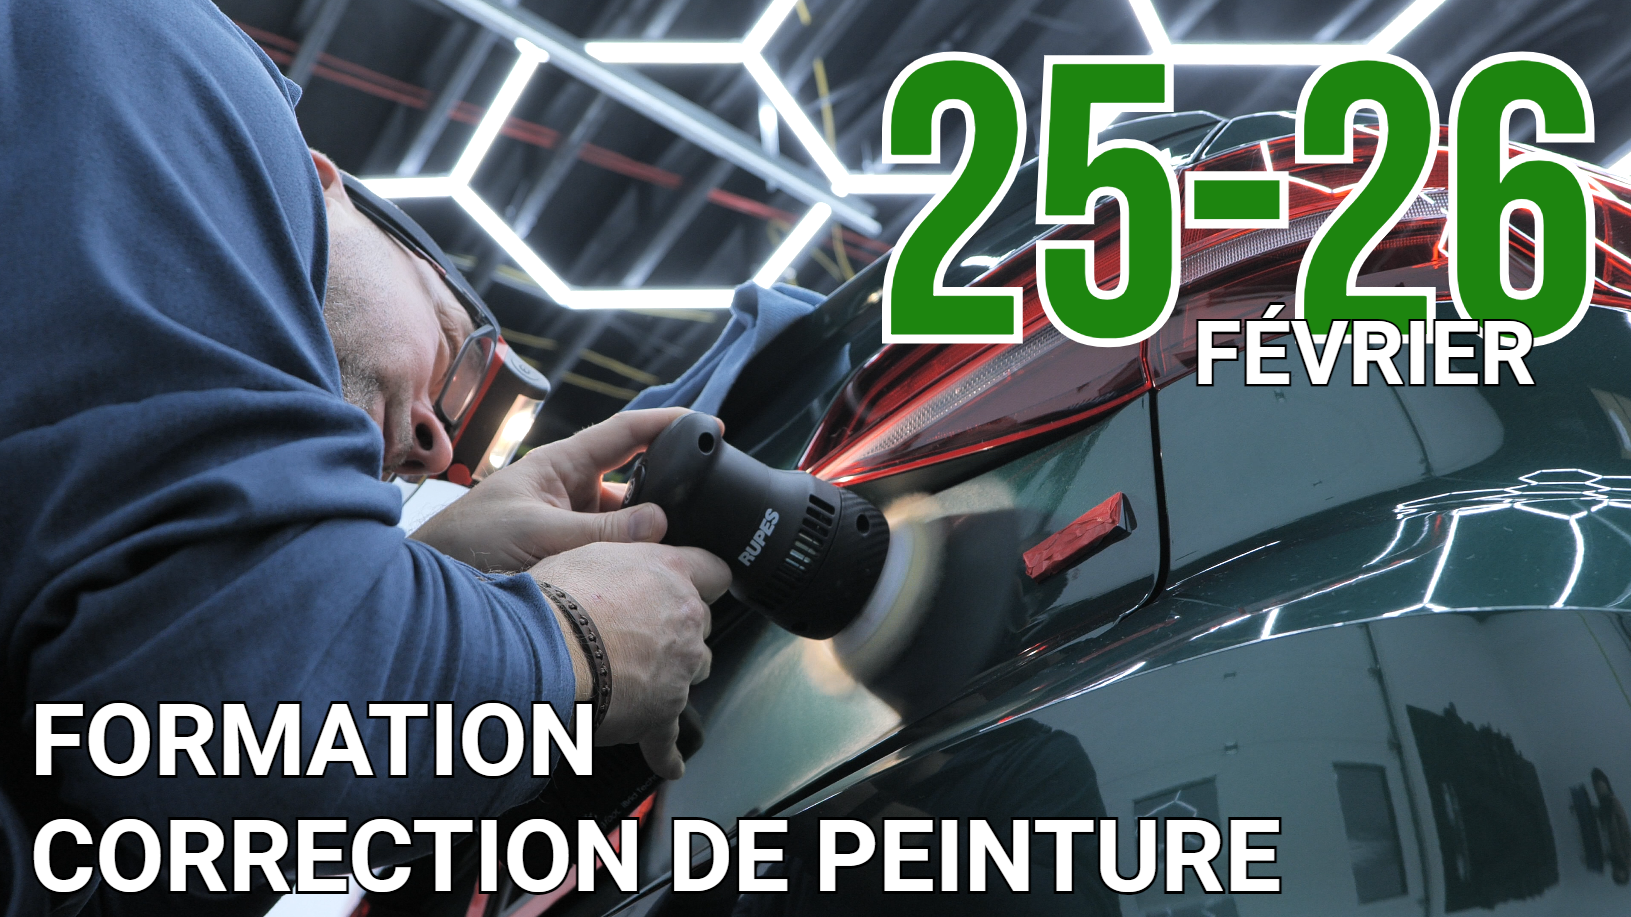 Formation Correction de Peinture | 25-26 Février à St-Hyacinthe (QC)